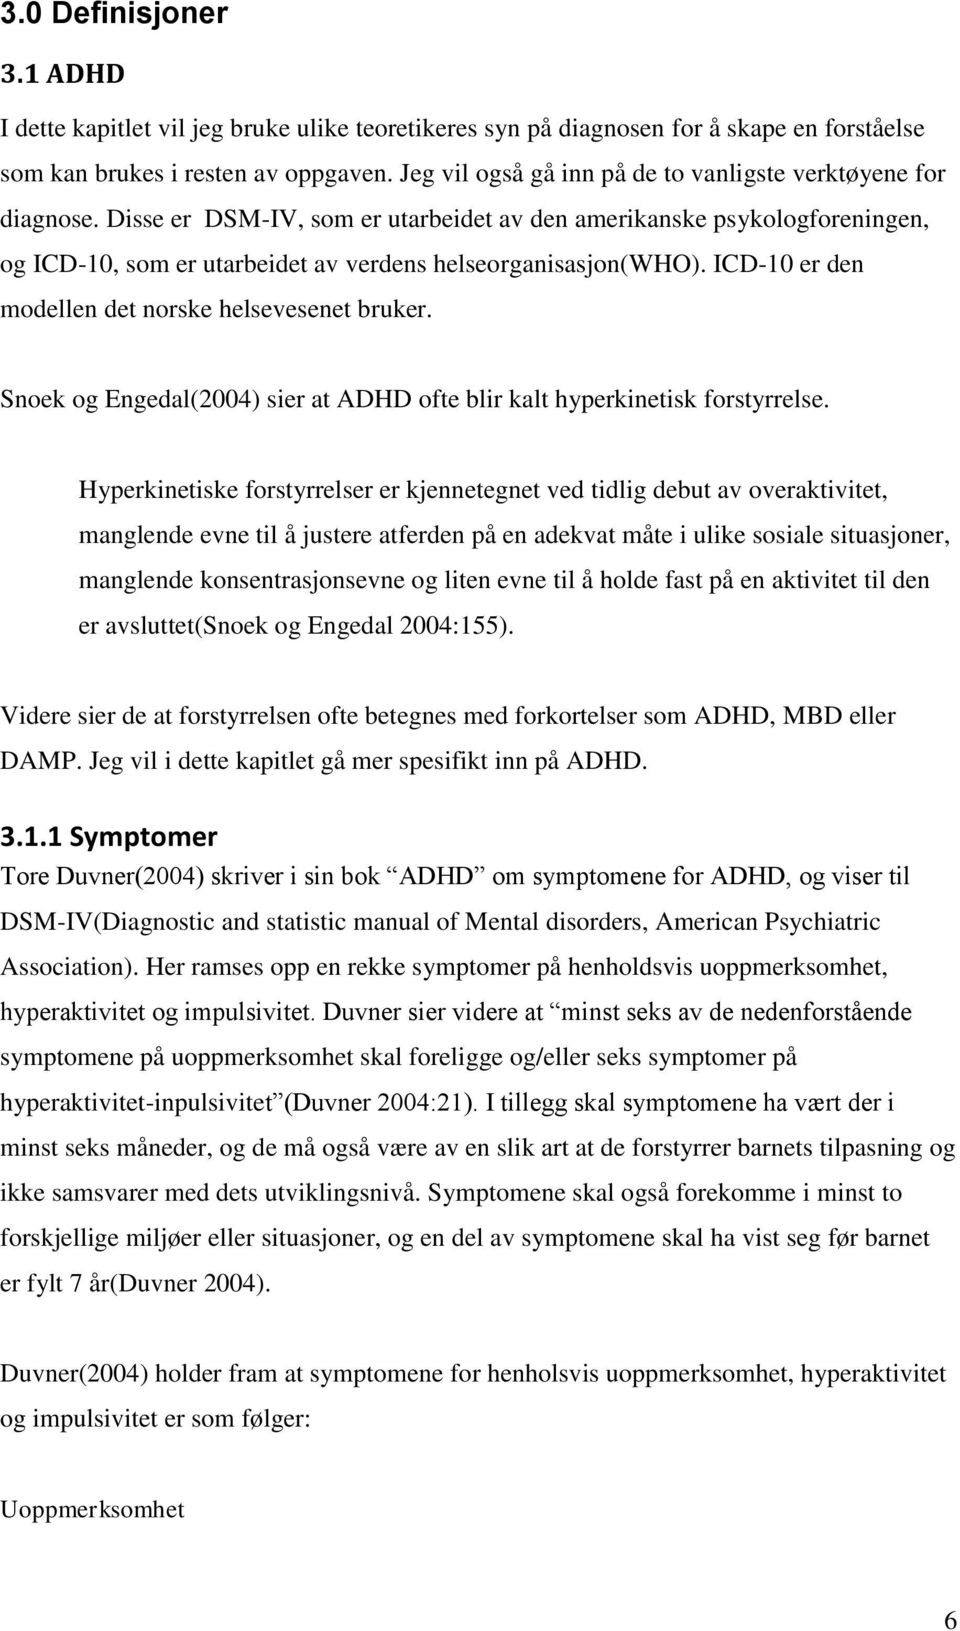 Disse er DSM-IV, som er utarbeidet av den amerikanske psykologforeningen, og ICD-10, som er utarbeidet av verdens helseorganisasjon(who). ICD-10 er den modellen det norske helsevesenet bruker.